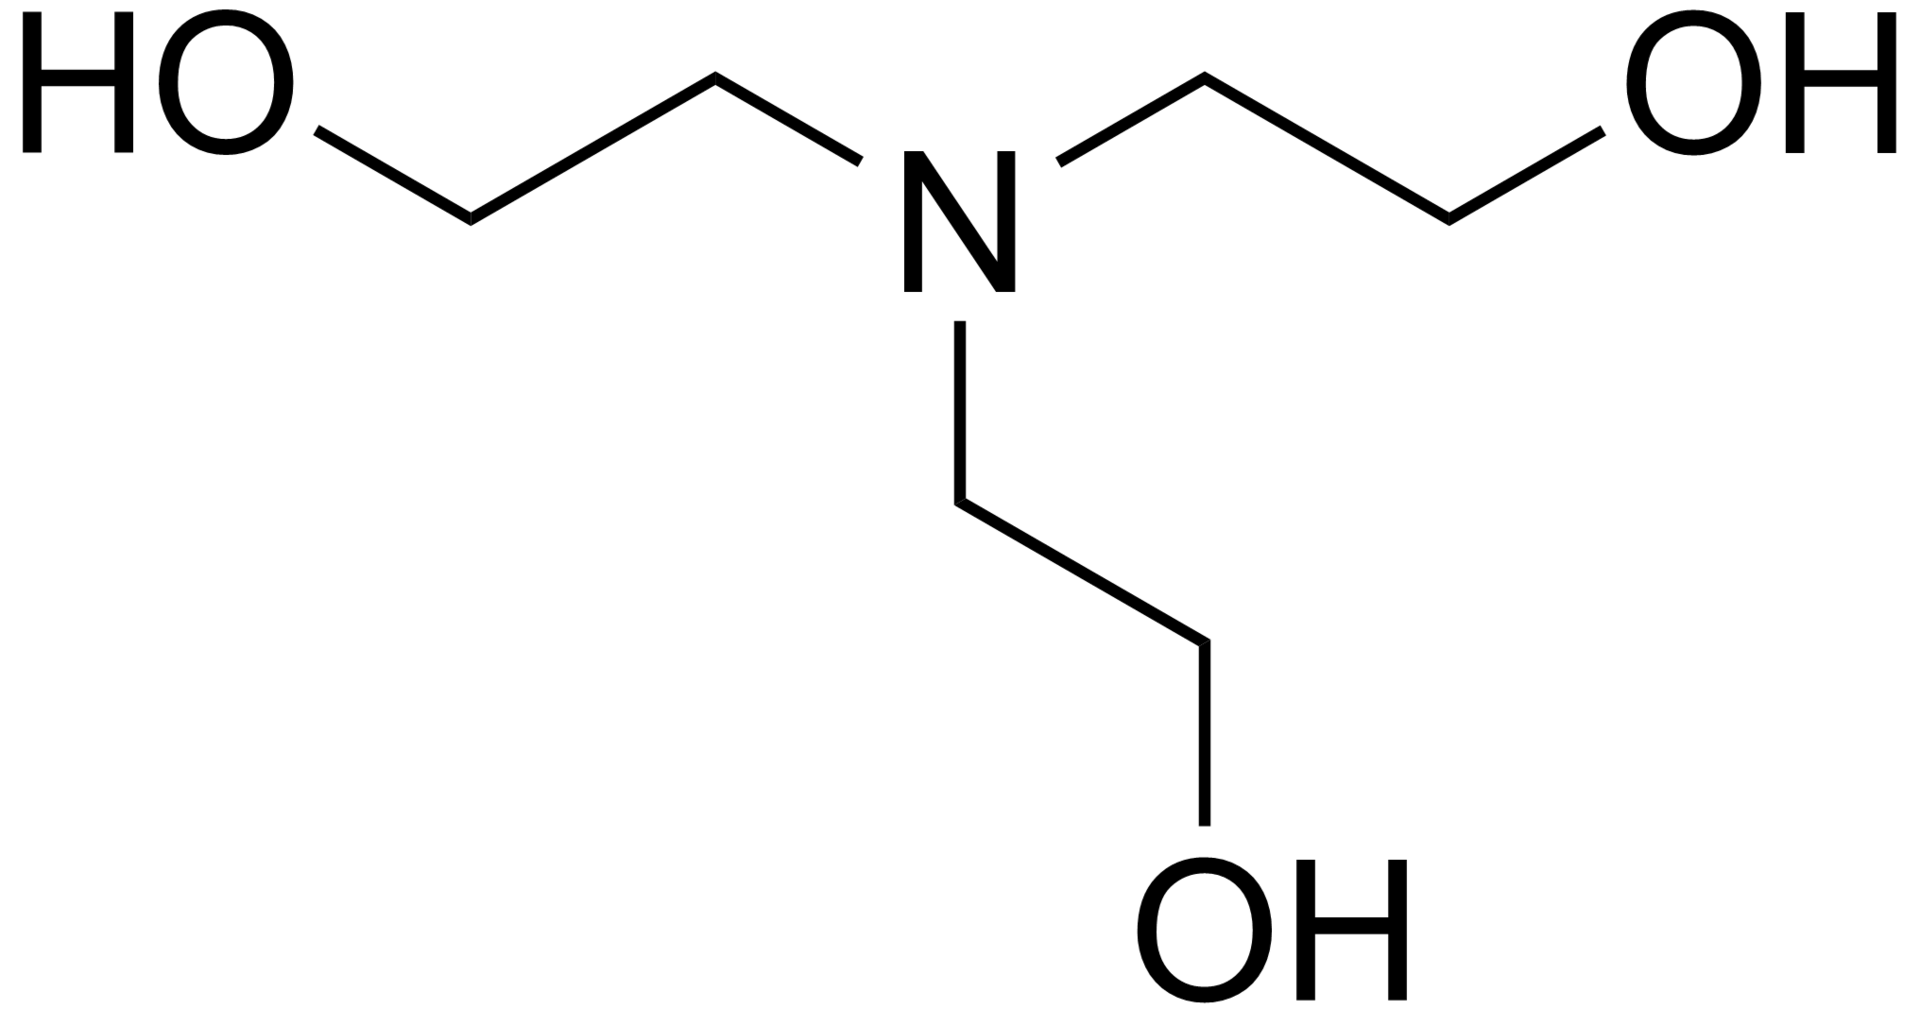 Skeletal formula of triethanolamine